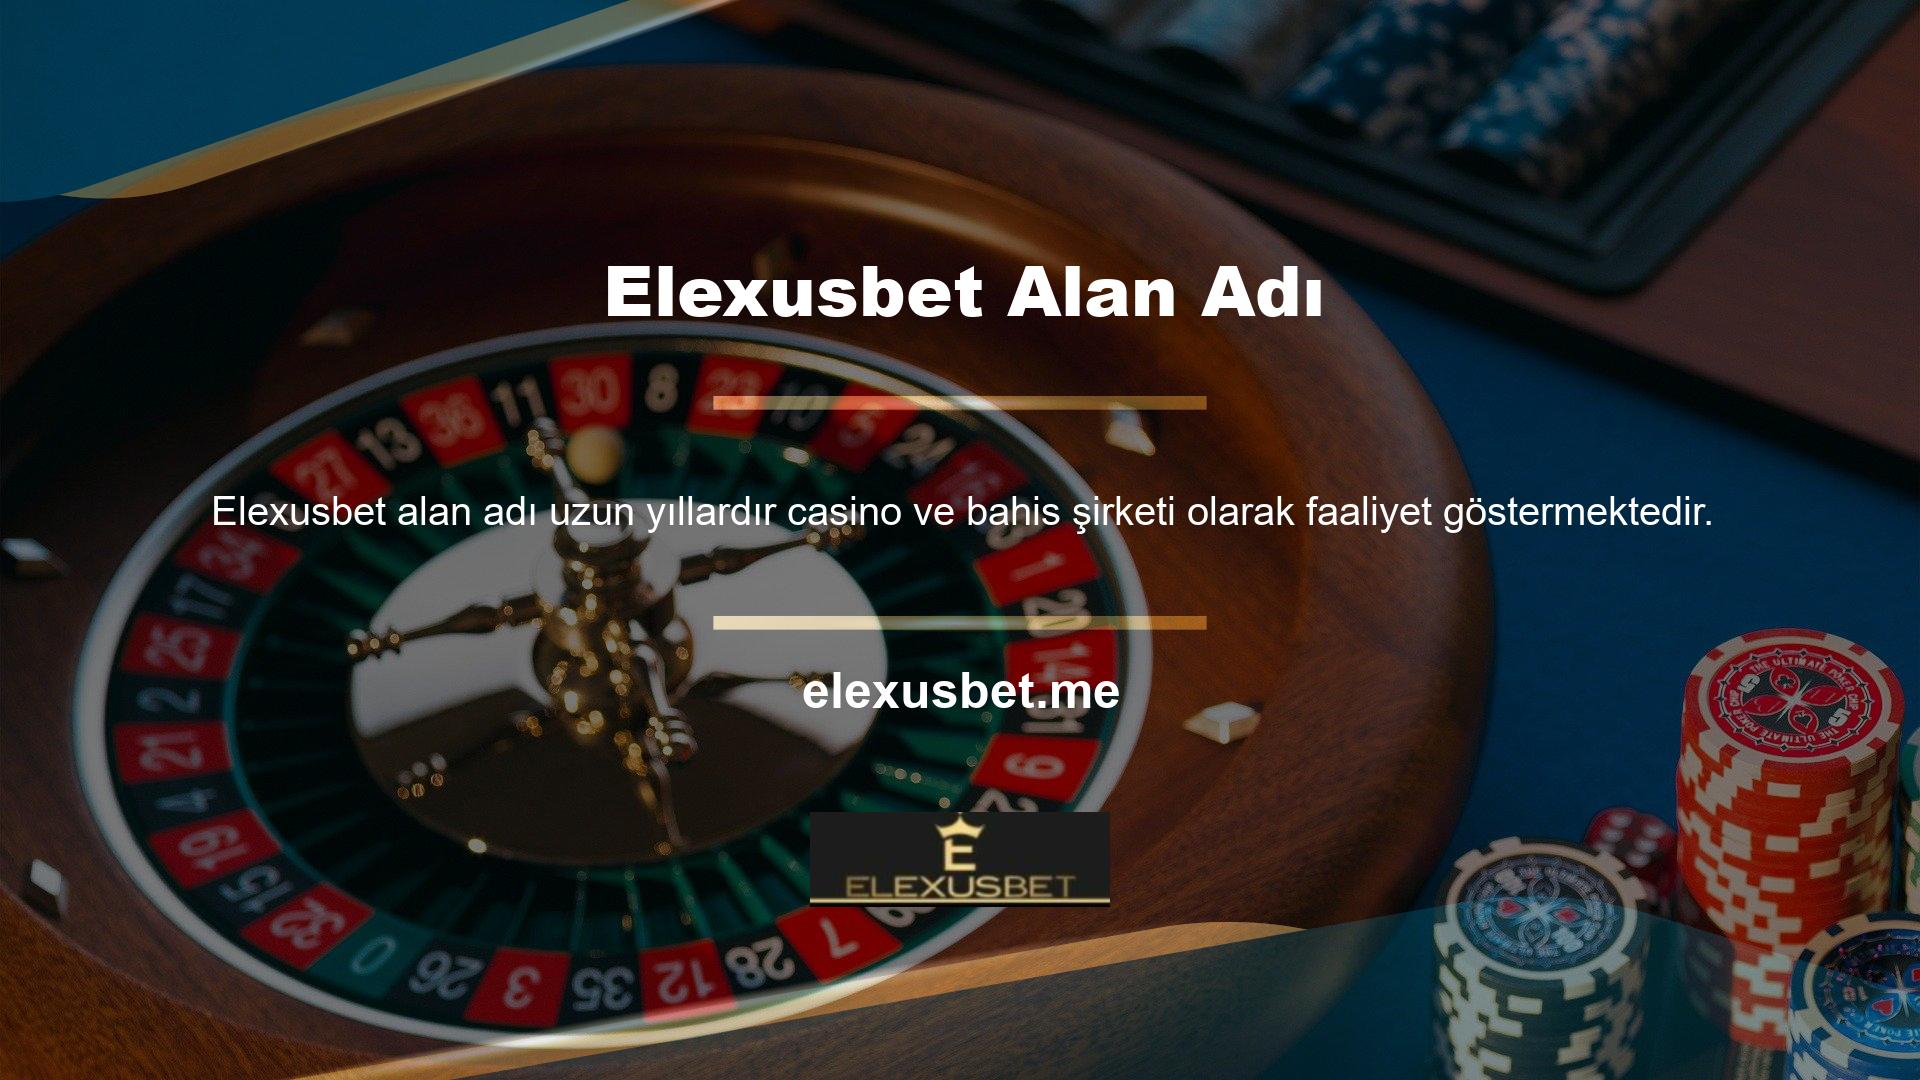 Ünlü Türk canlı bahis sitelerinden biri olan Elexusbet, müşterilerine harika promosyonlar ve bonuslar sunmaya devam ediyor